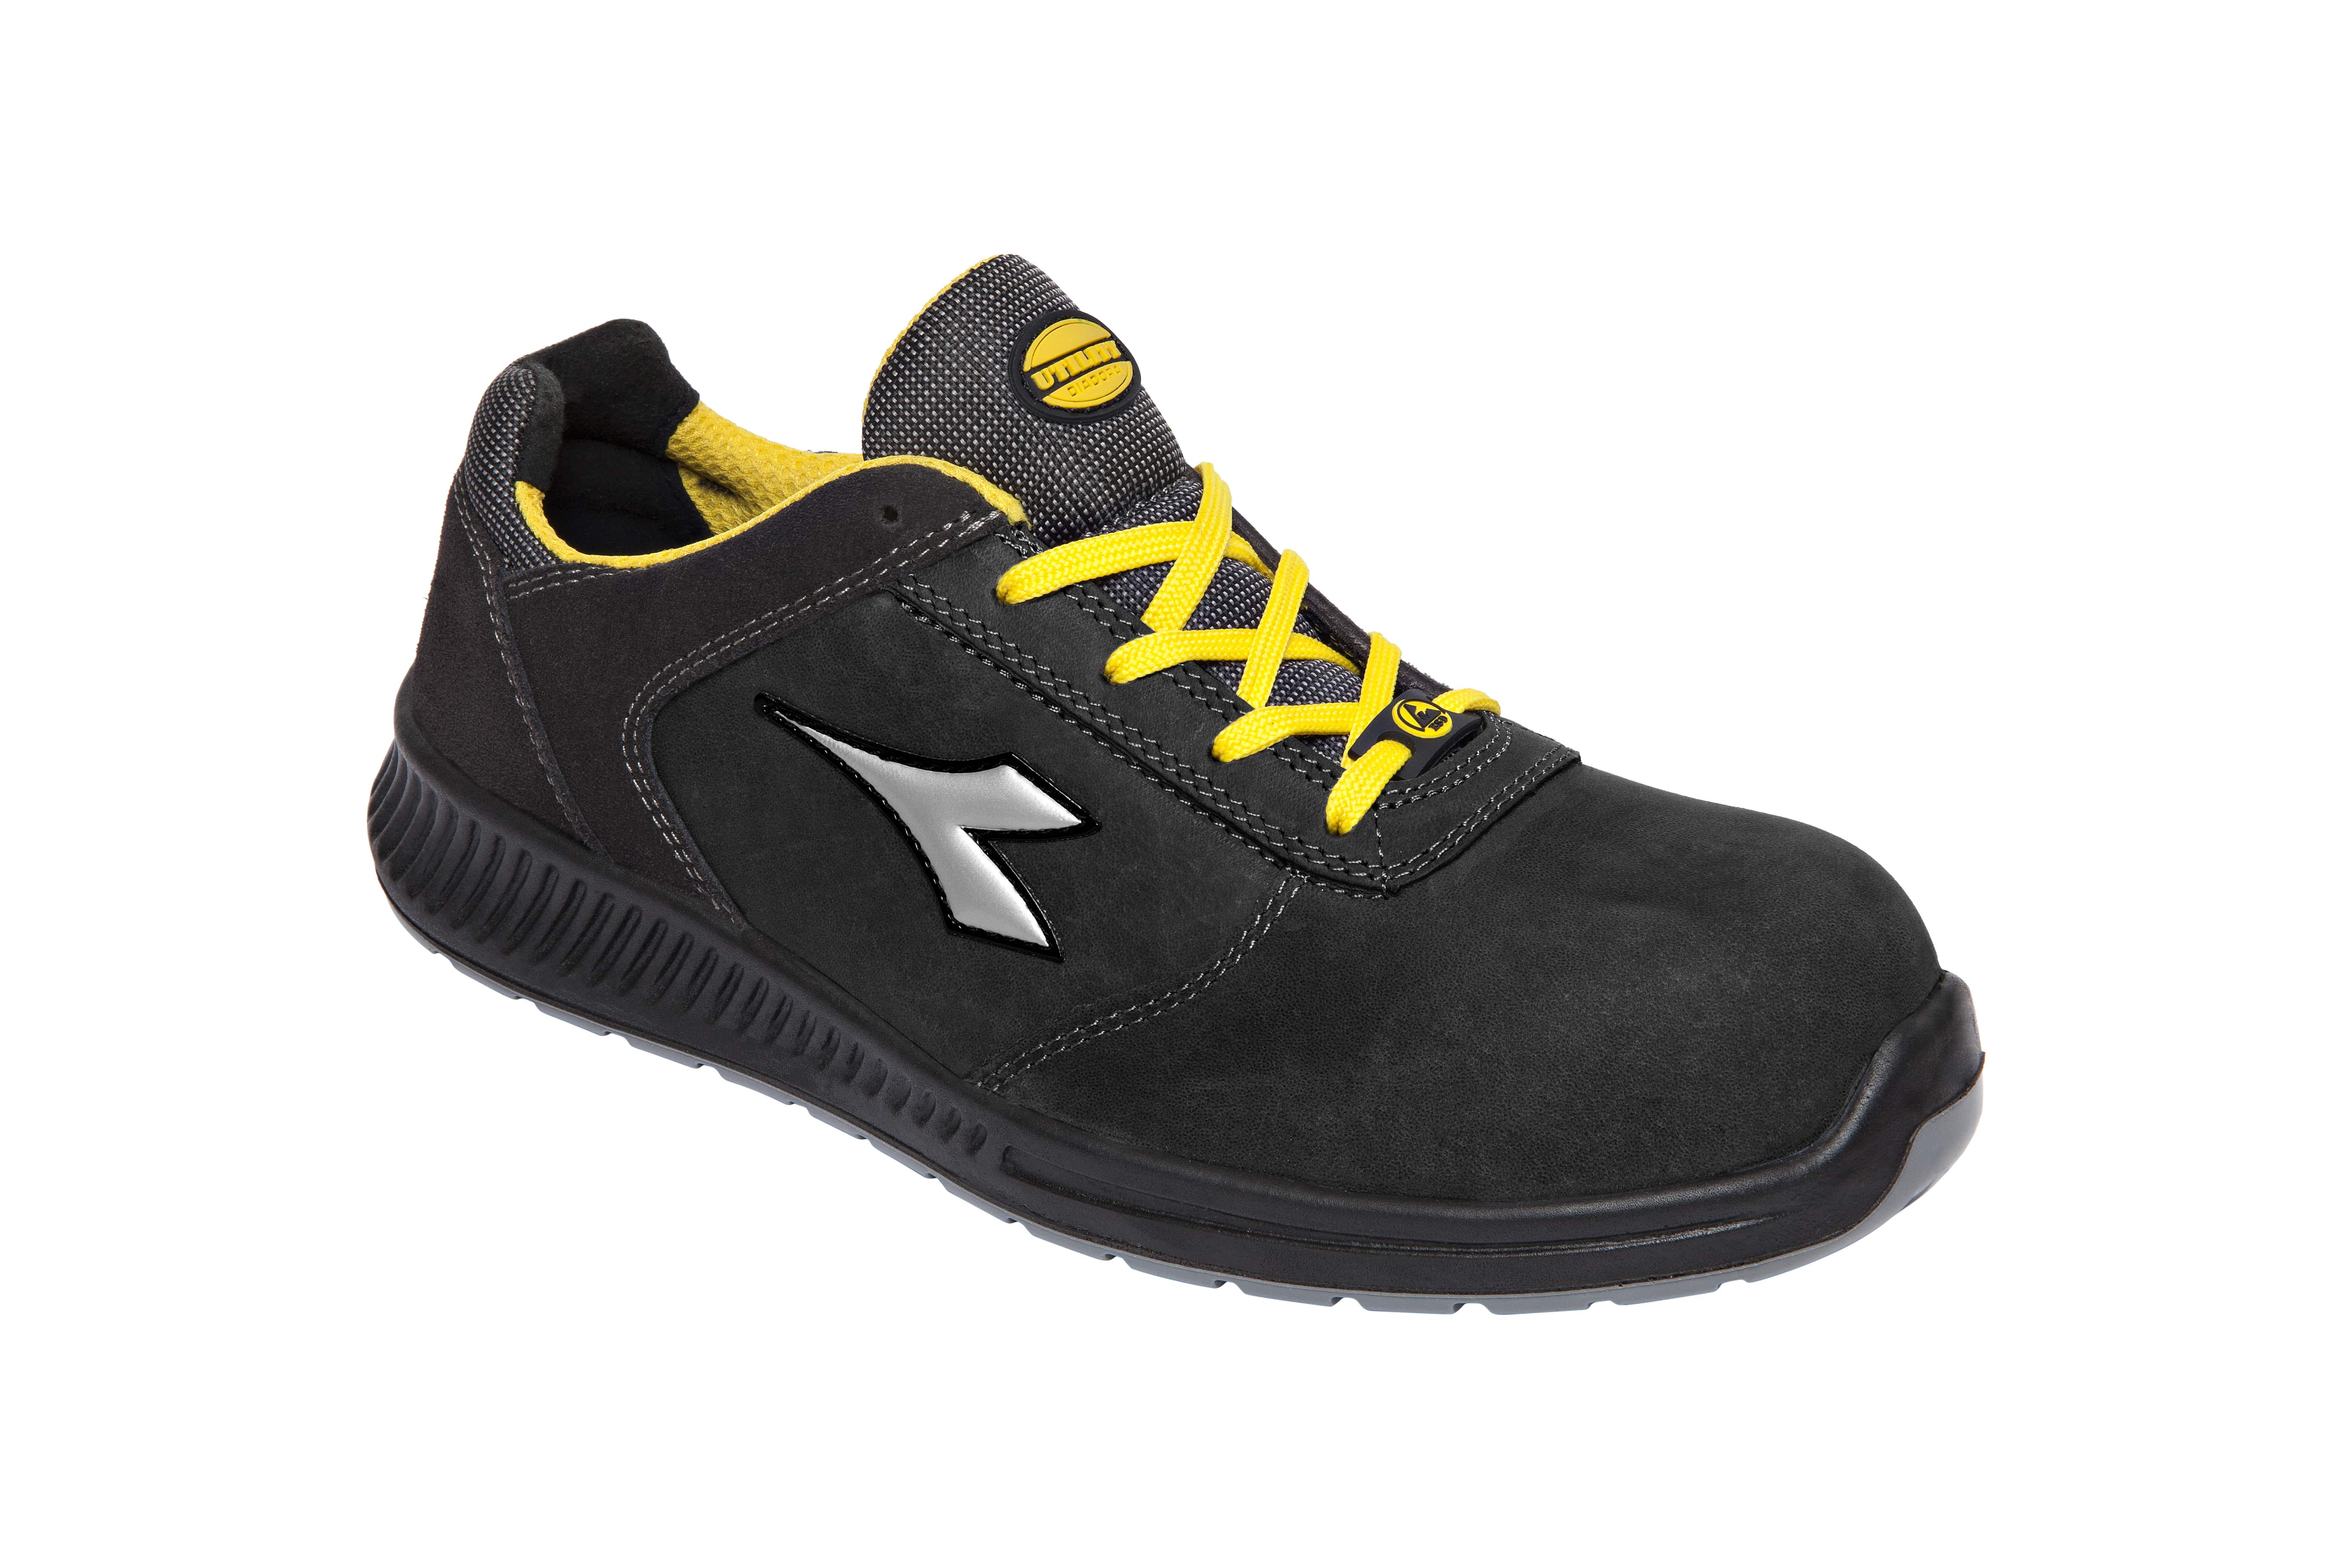 Herencia Lirio lazo Outlet zapatos de seguridad deportivos | Comprar zapatos de seguridad  deportivos | Calzado de Proteccion